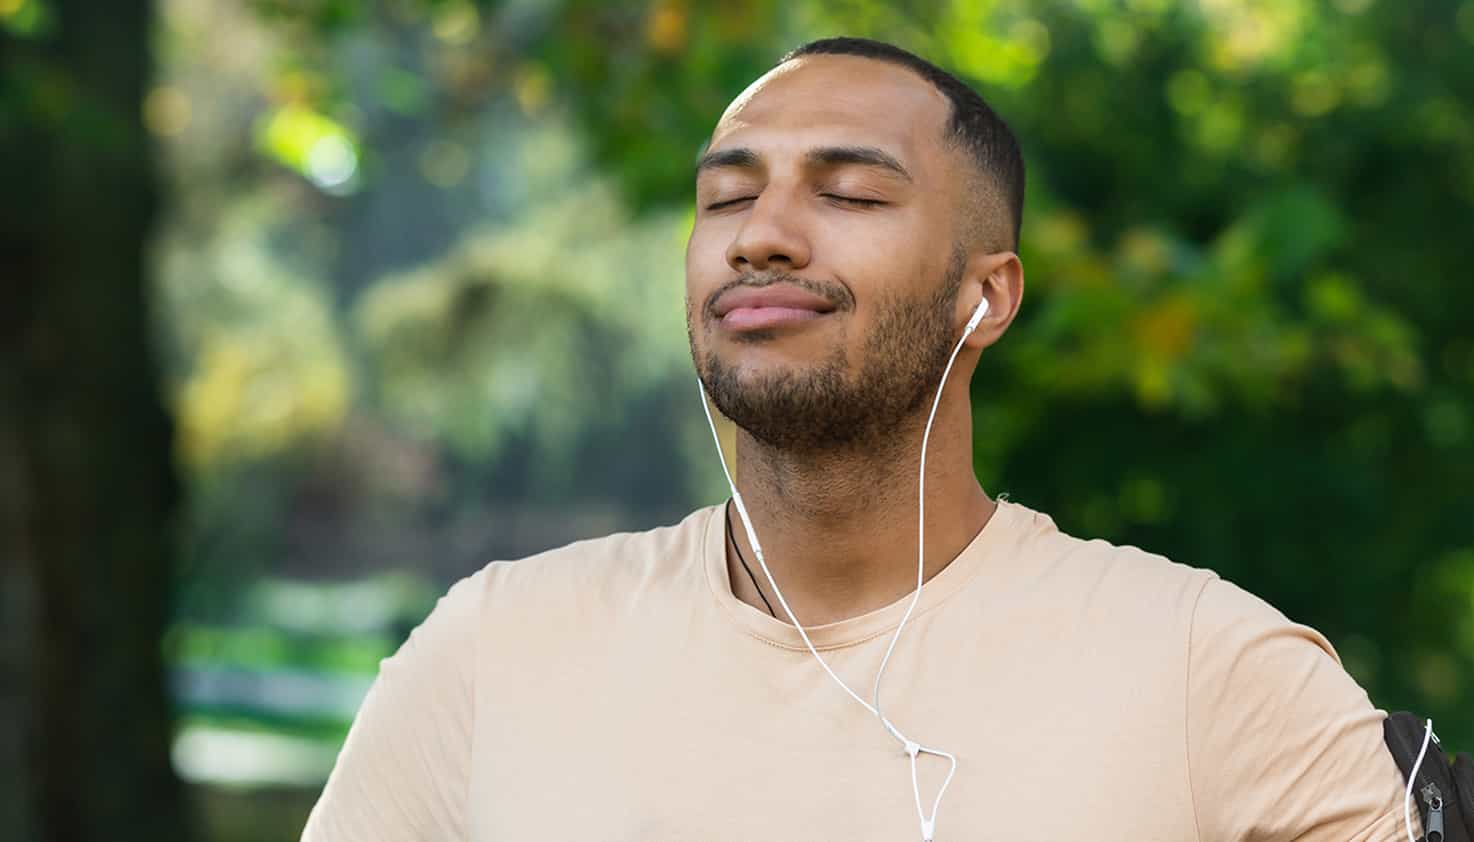 Der Mann atmet tief ein, während er im Park steht und seine Musik über seine verkabelten Ohrhörer hört.